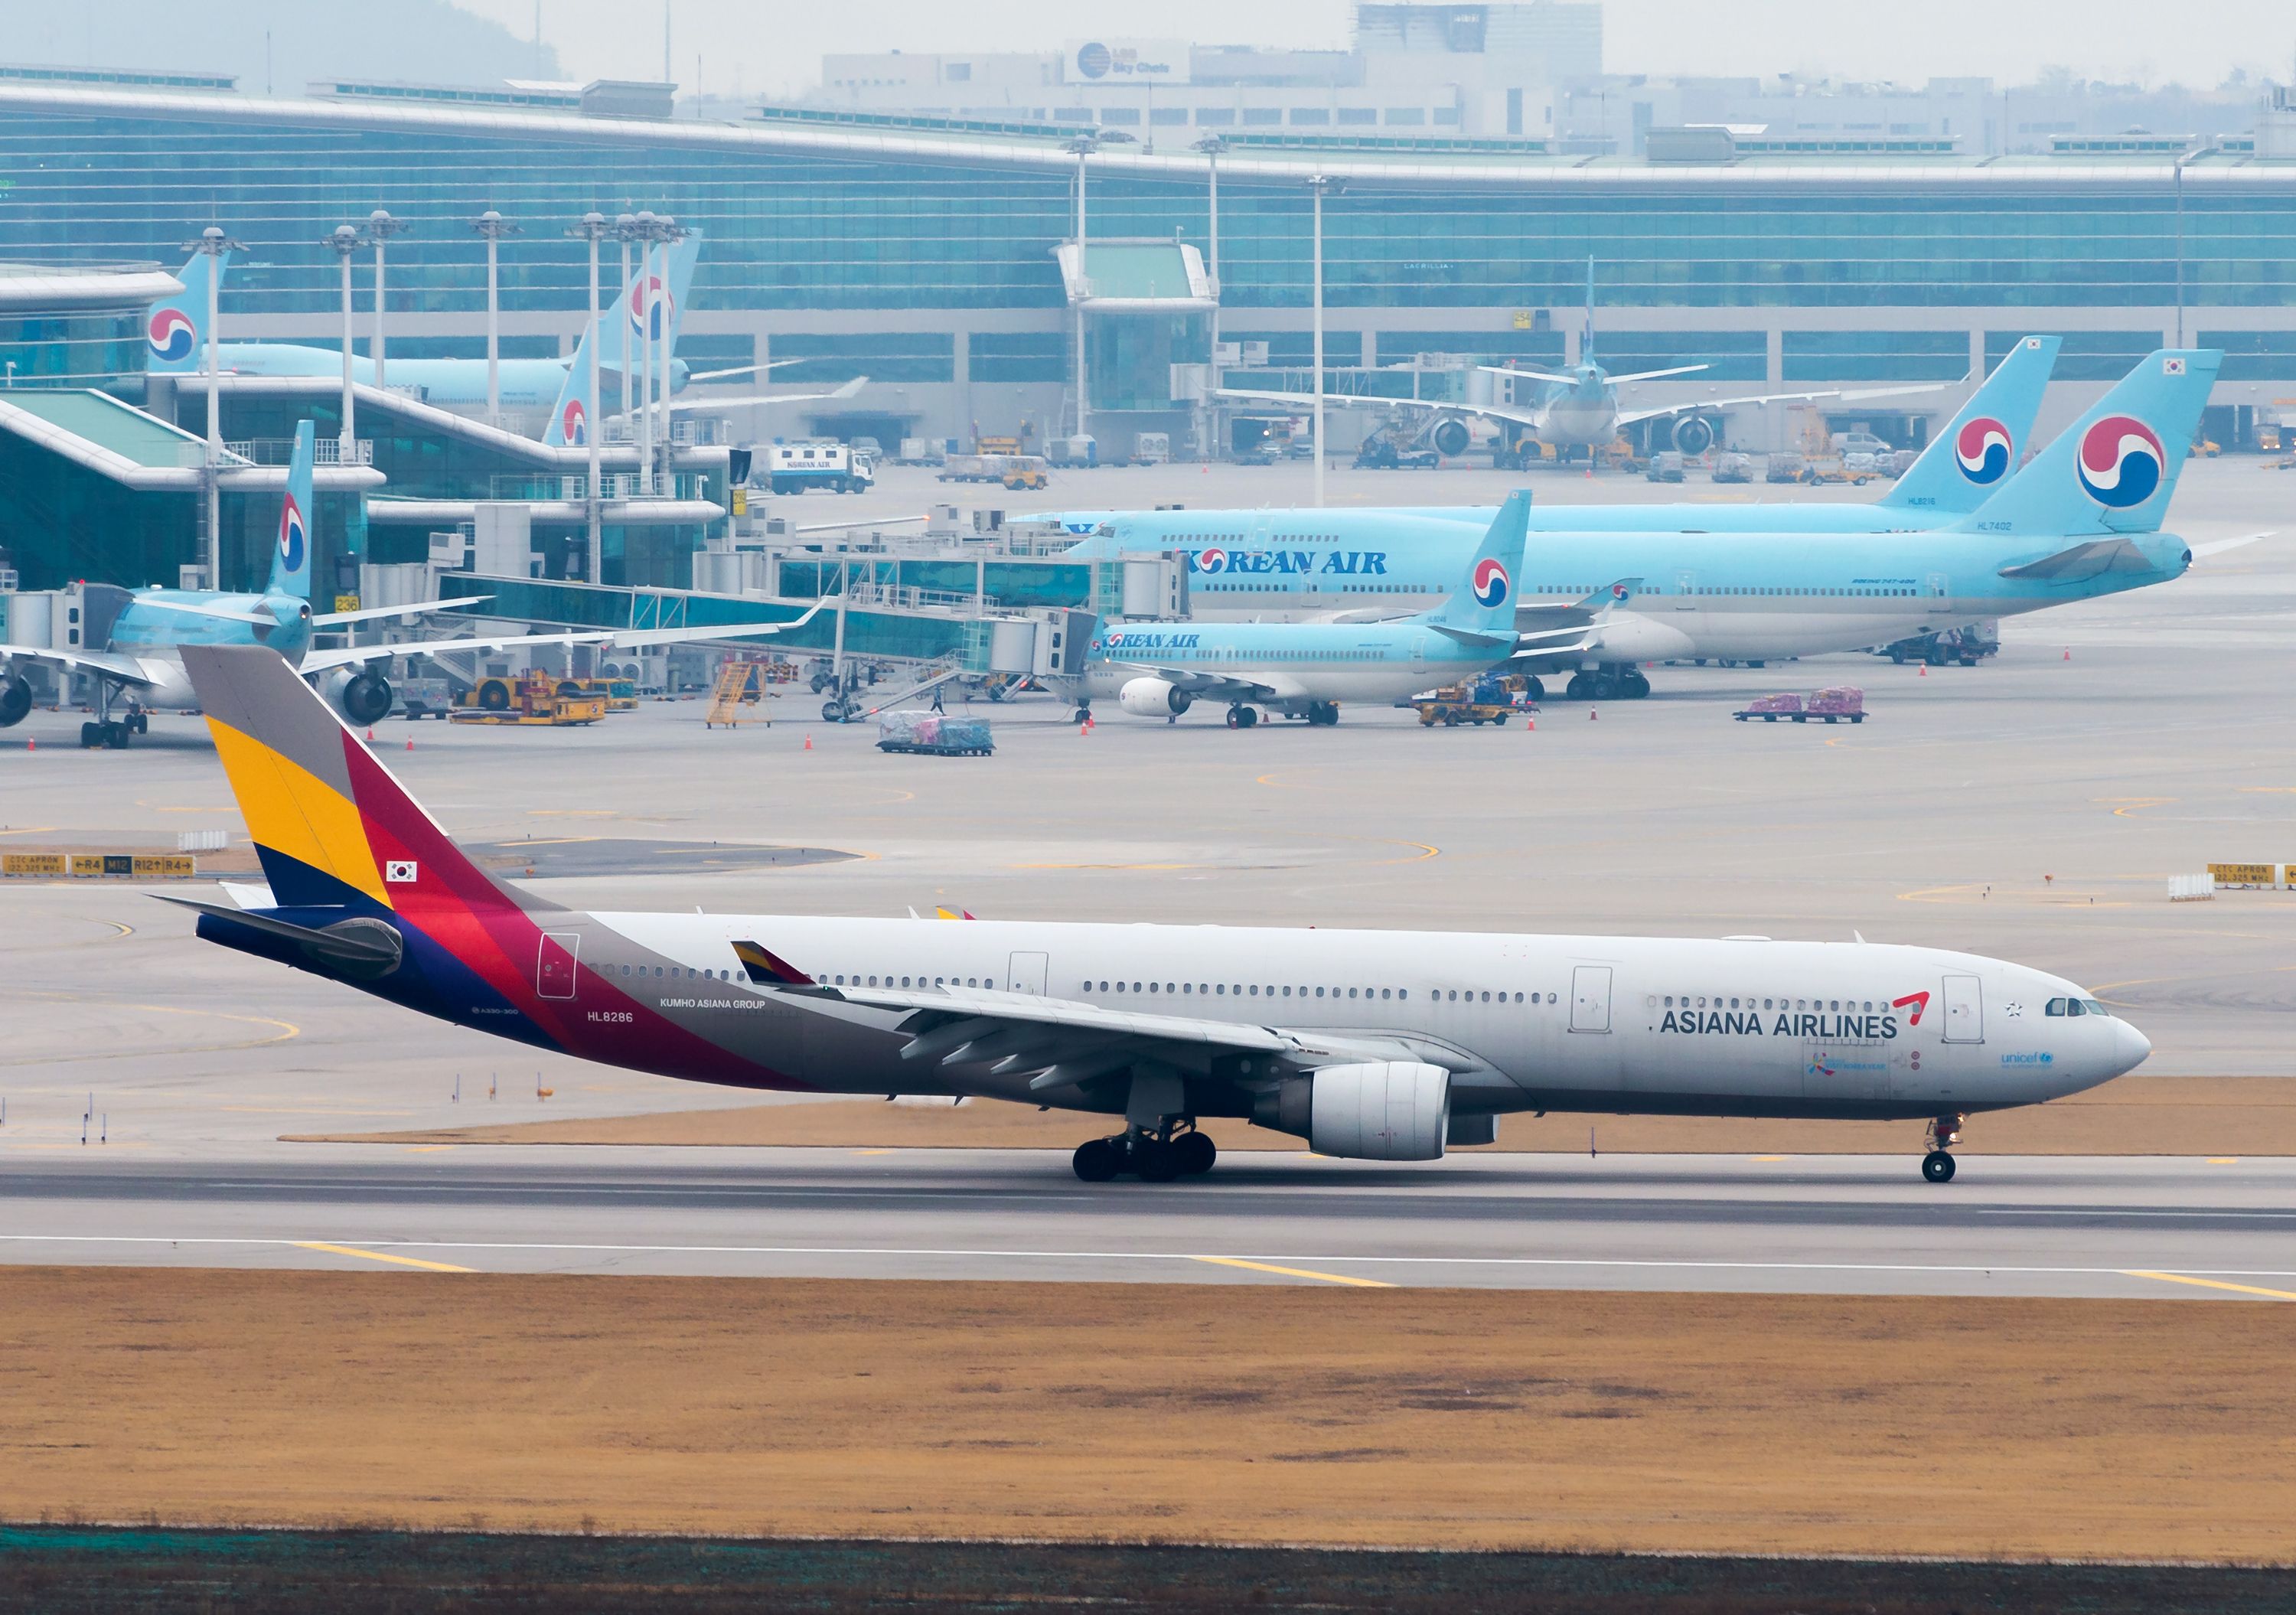 Asiana Airlines and Korean Air aircraft